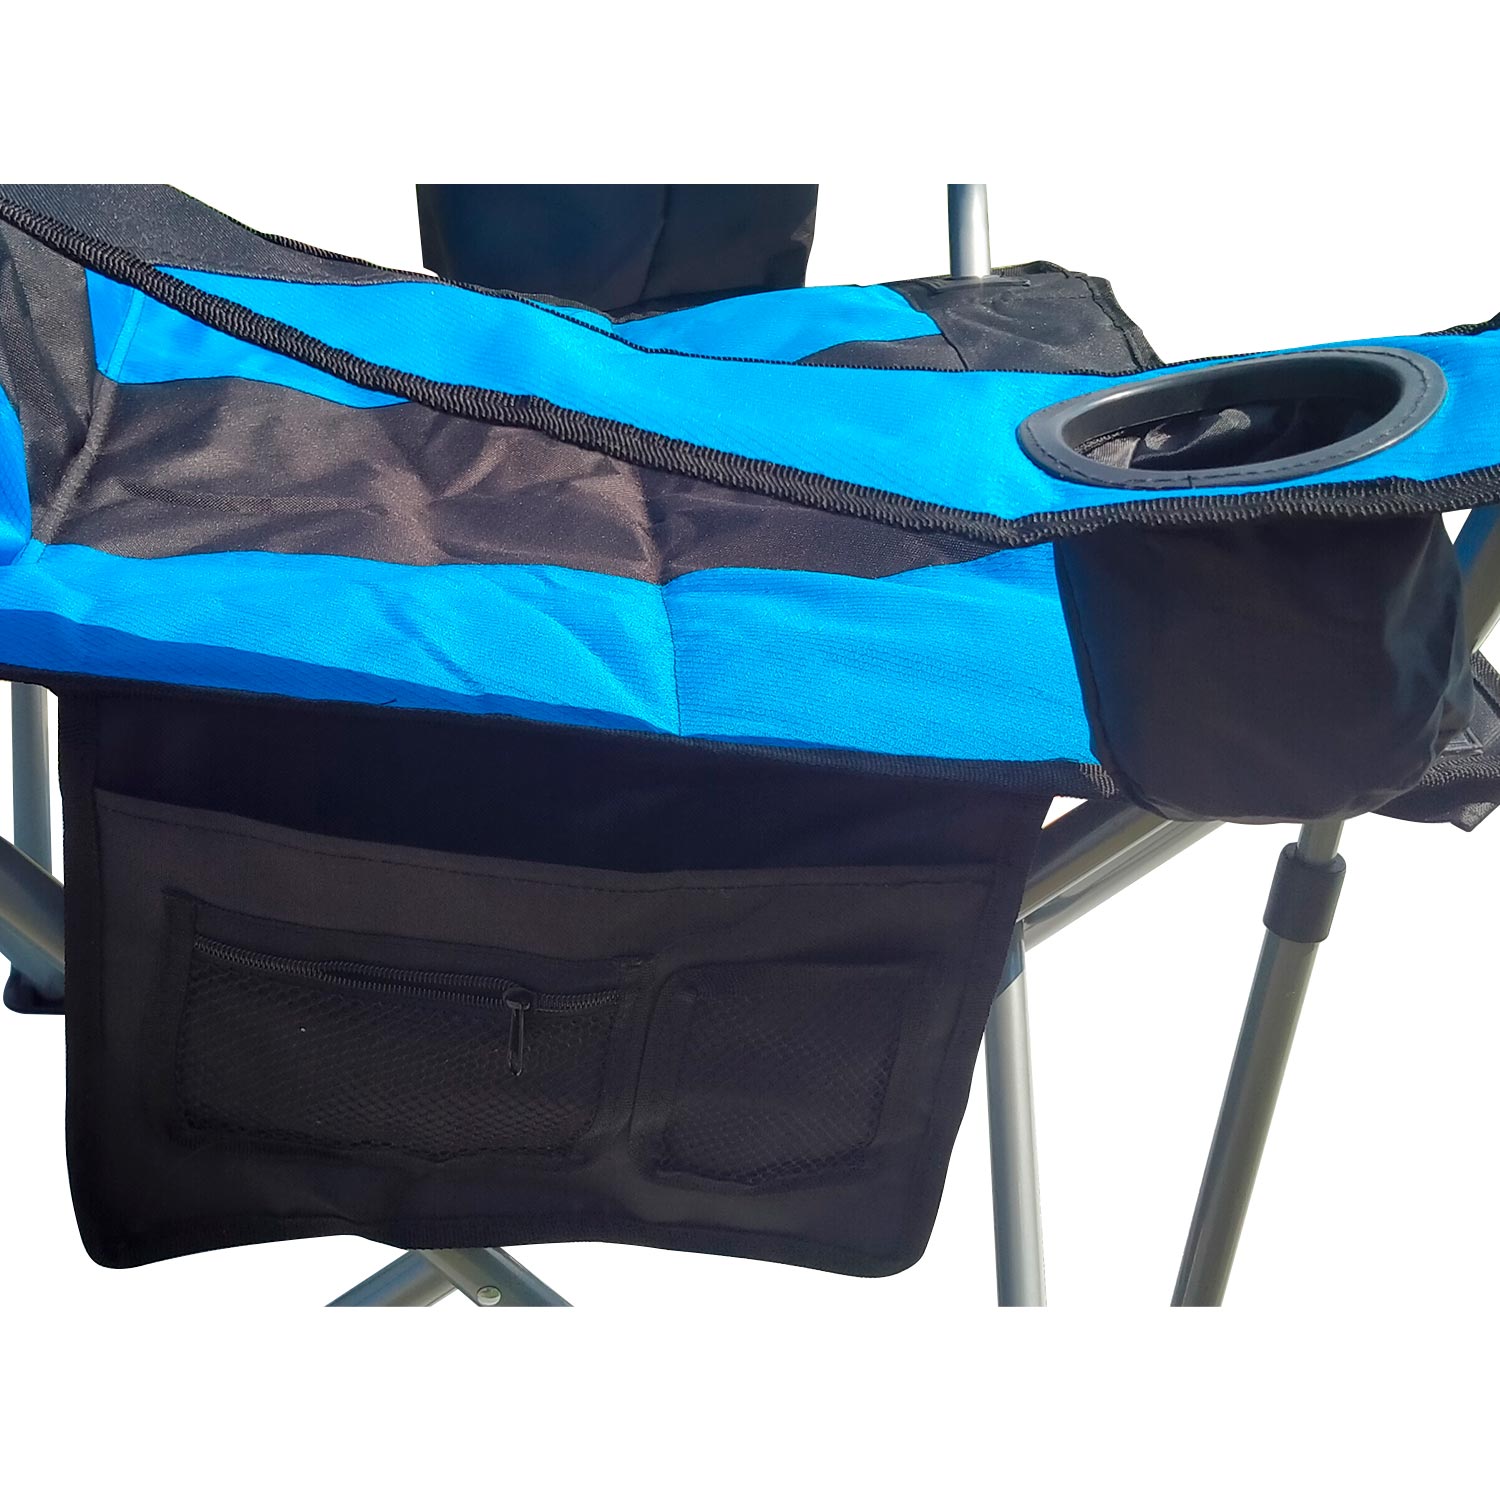 8(499)9387578 Купить кресло складное с подлокотниками, термосумкой, органайзером и подстаканником 60х51х98см coolwalk guidesman синее от 4 940 руб. - заказать